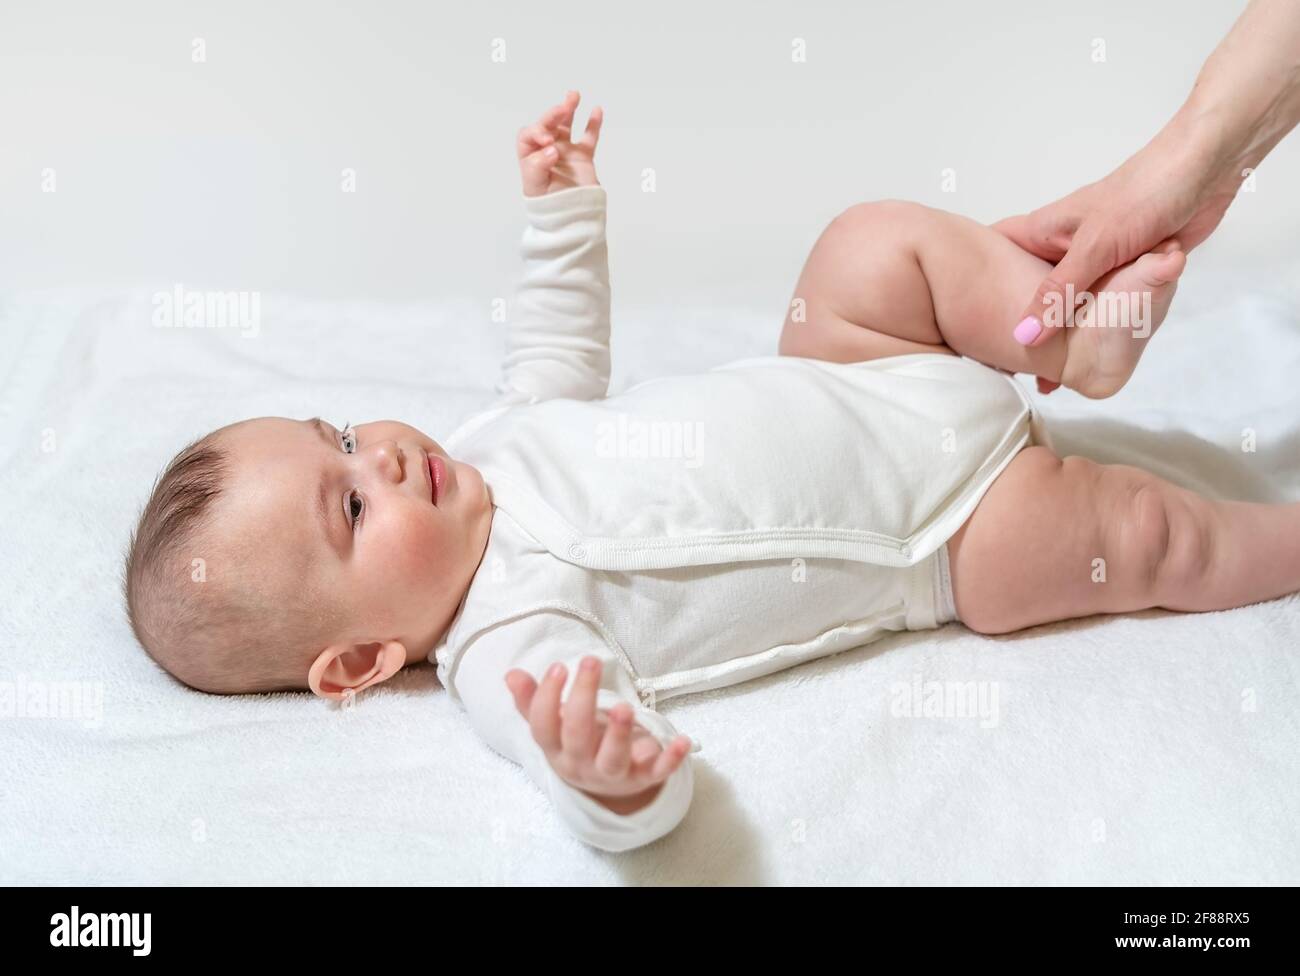 Neugeborenes gesundes Baby, das körperliche Übungen für die Beine und das Hüftgelenk macht. Mit Hilfe der Mutter des Sanitäters. Auf weißem Hintergrund. Stockfoto